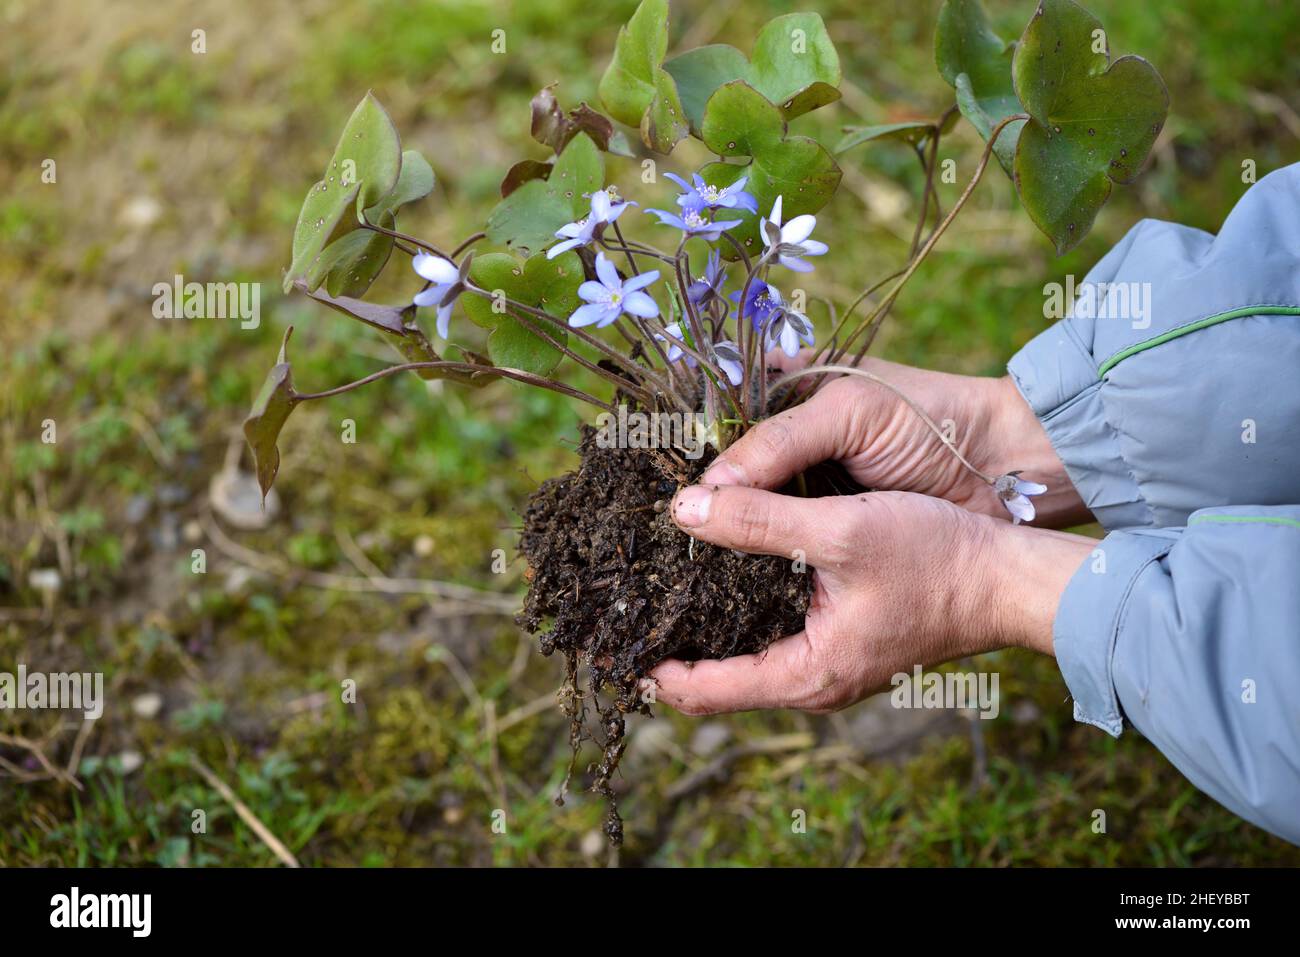 Hepatica nobilis in gardener's hands prepared for planting. Spring garden works concept Stock Photo